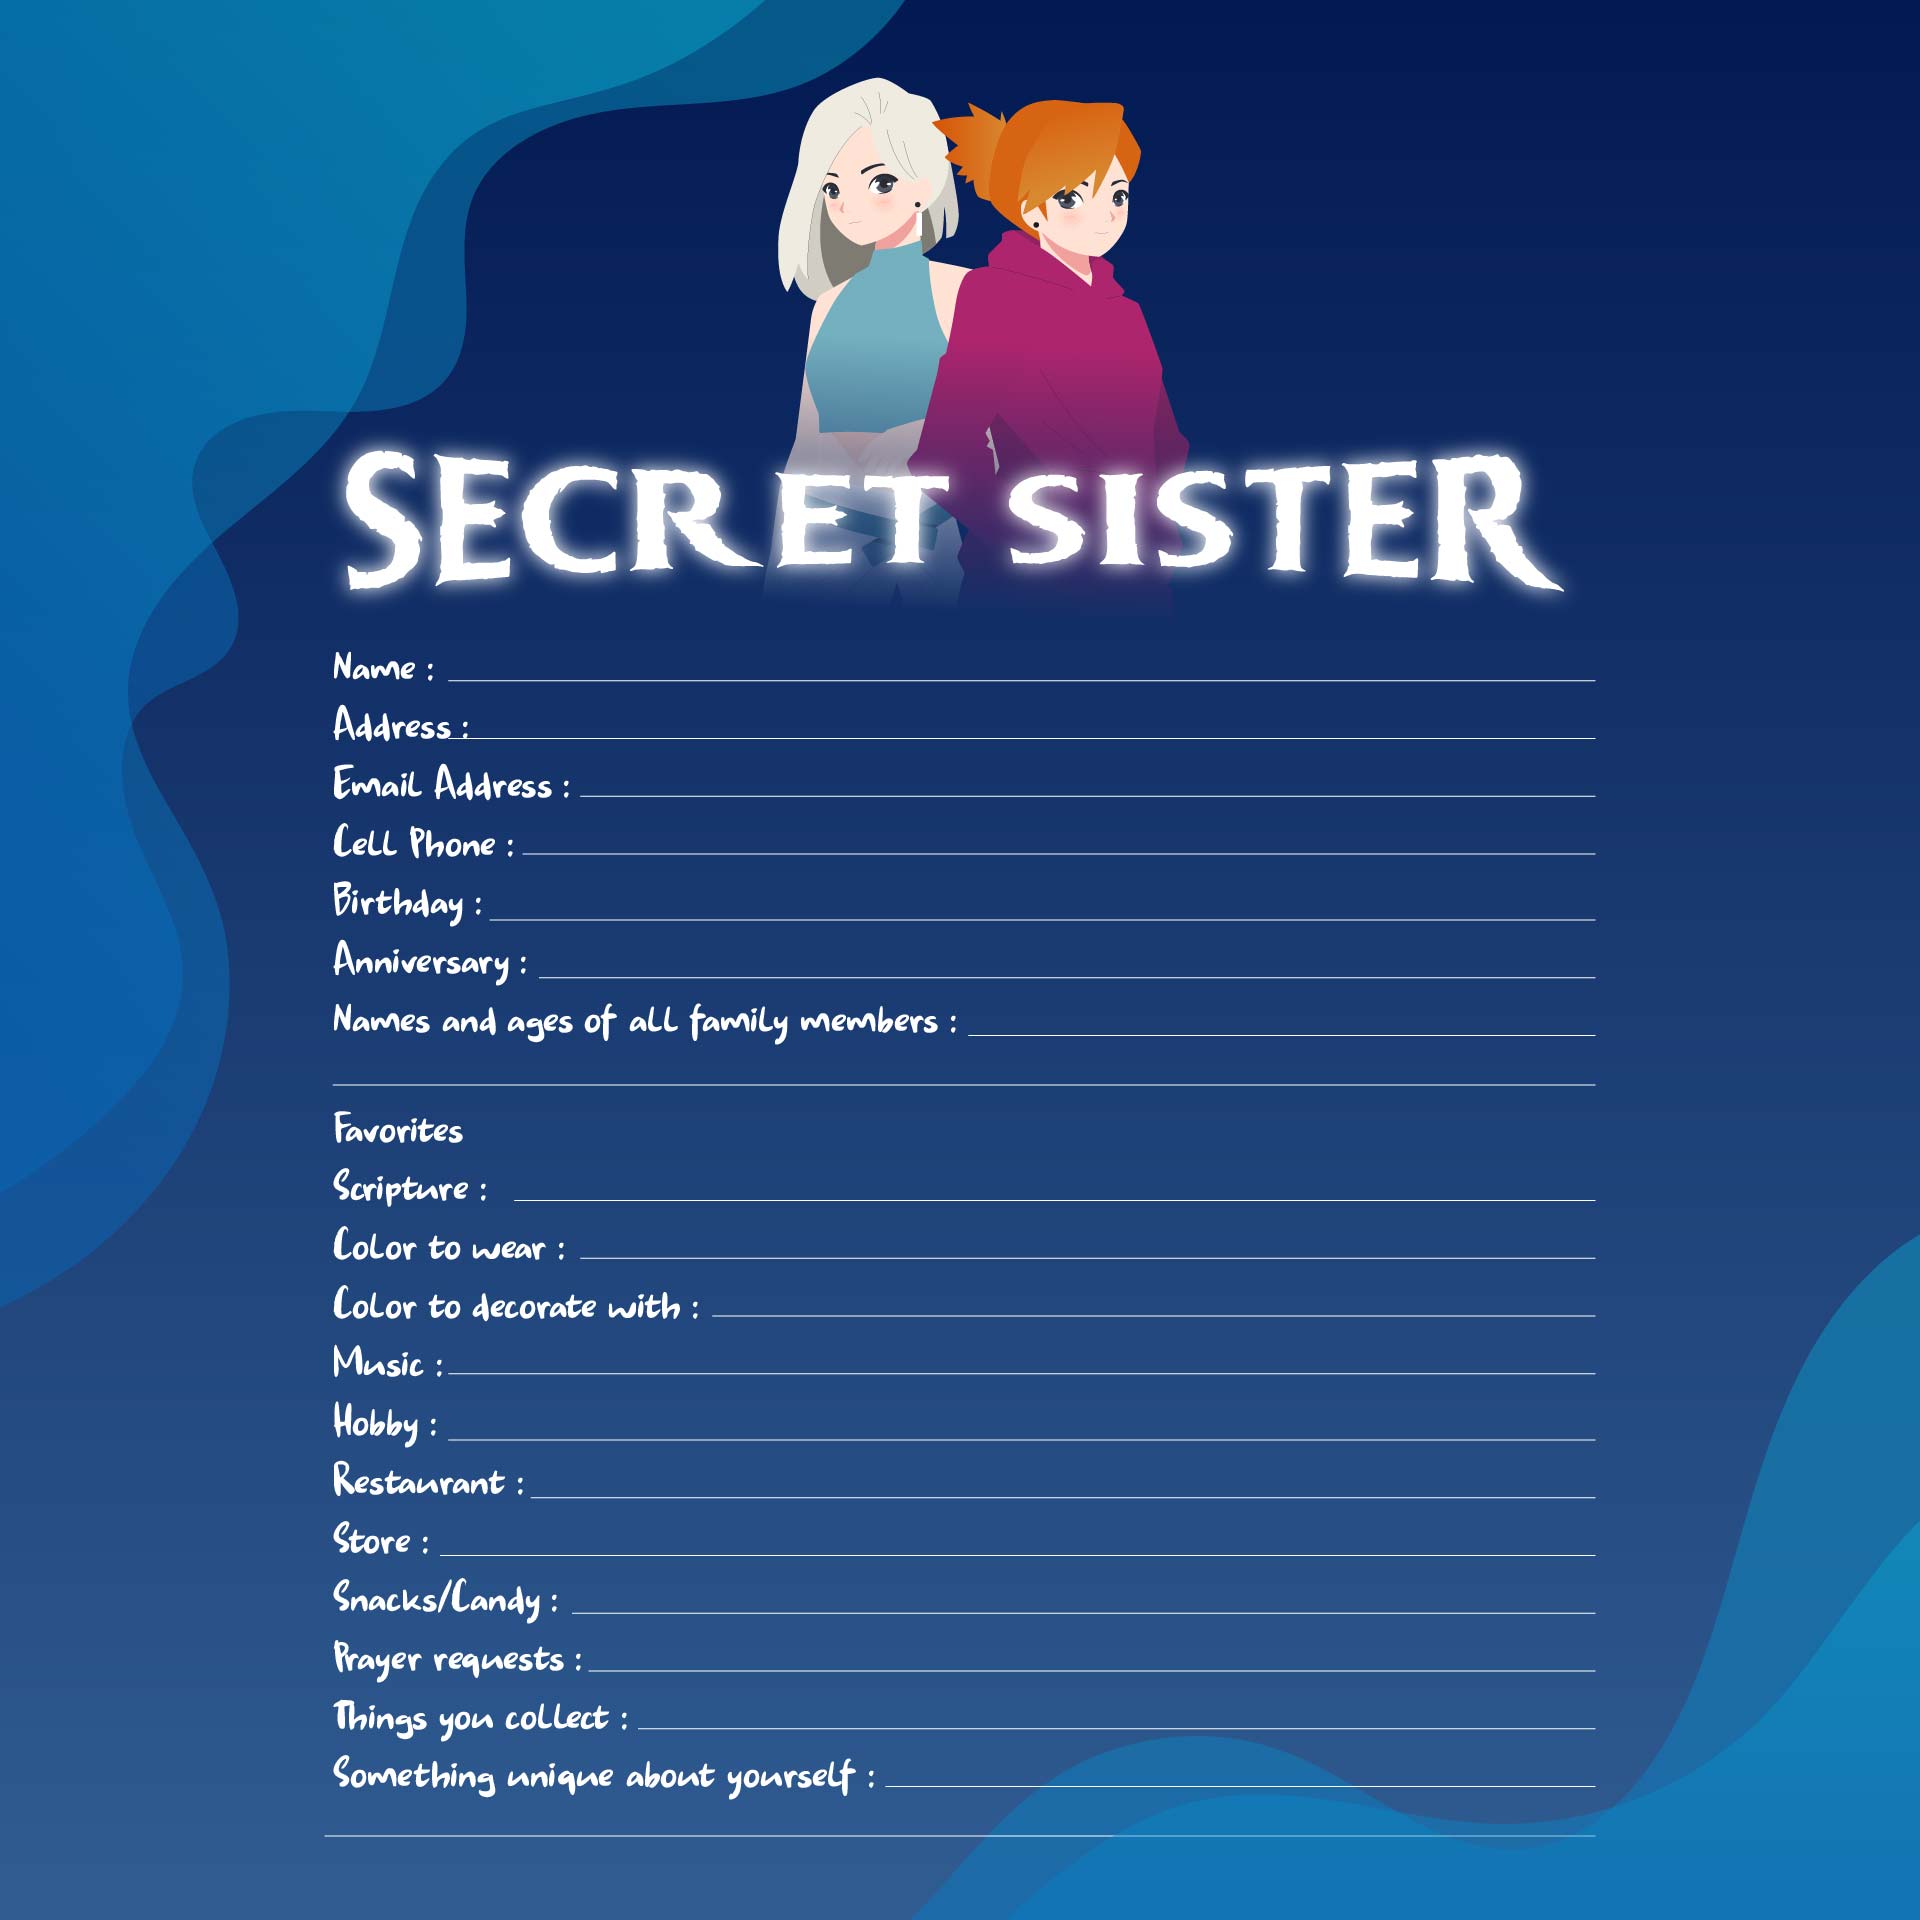 7-best-images-of-secret-sister-forms-printable-printable-secret